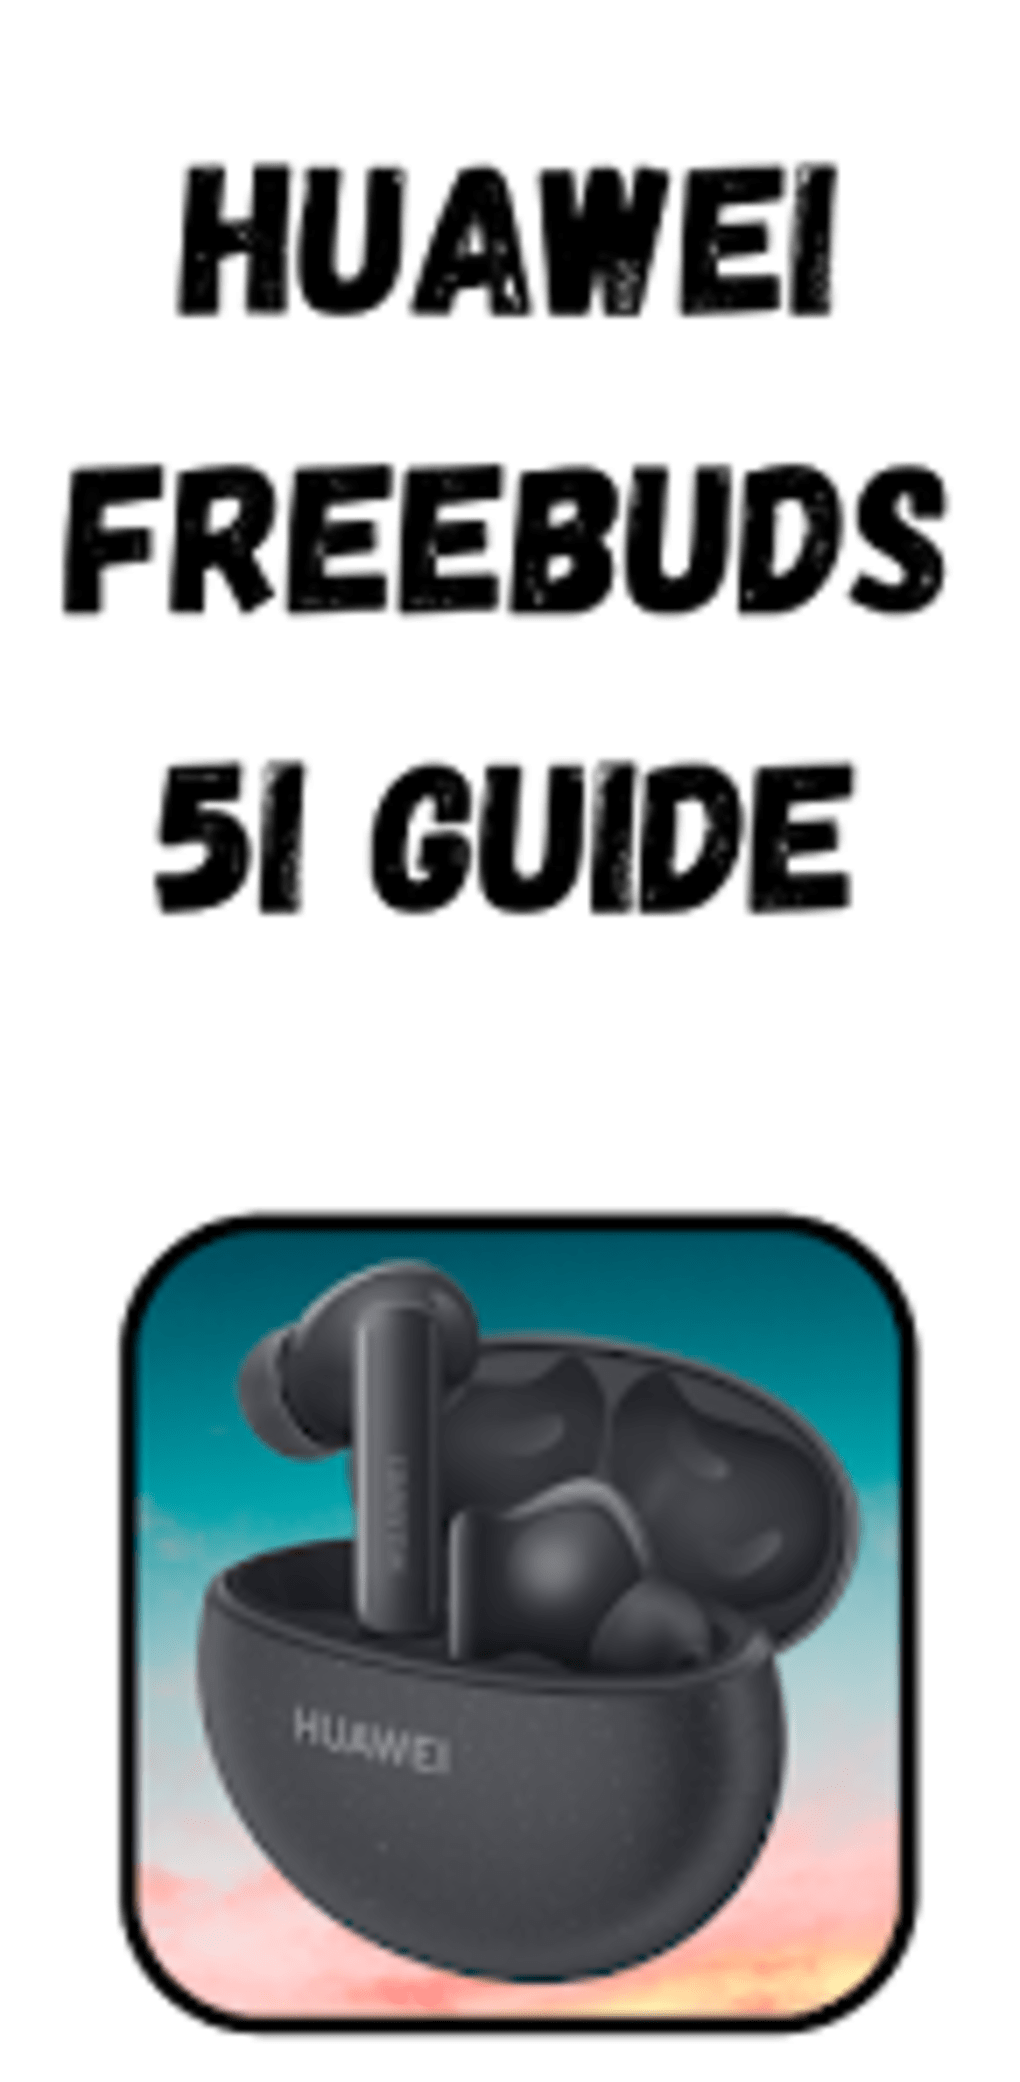 Huawei FreeBuds 5i, mucho que ofrecer por un precio para todos